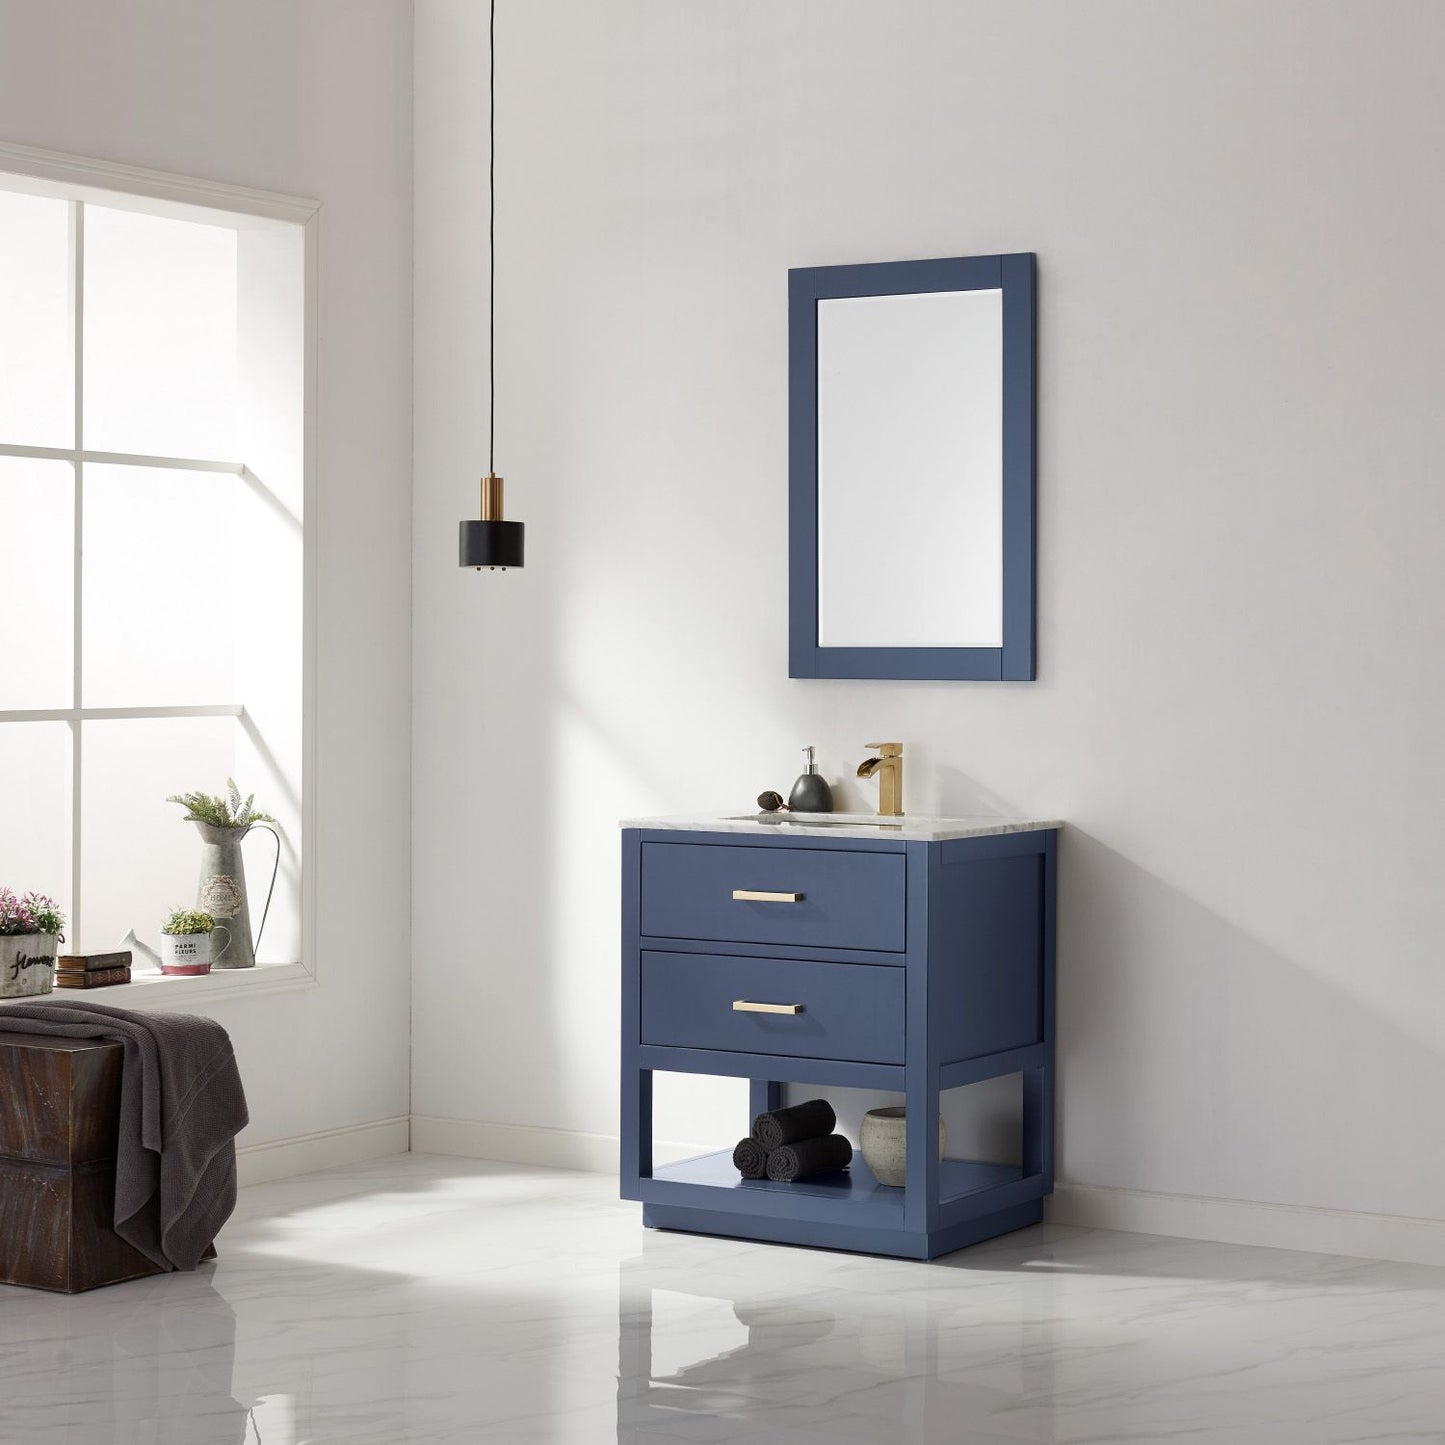 Altair Remi 30" Single Bathroom Vanity Set Countertop with Mirror - Luxe Bathroom Vanities